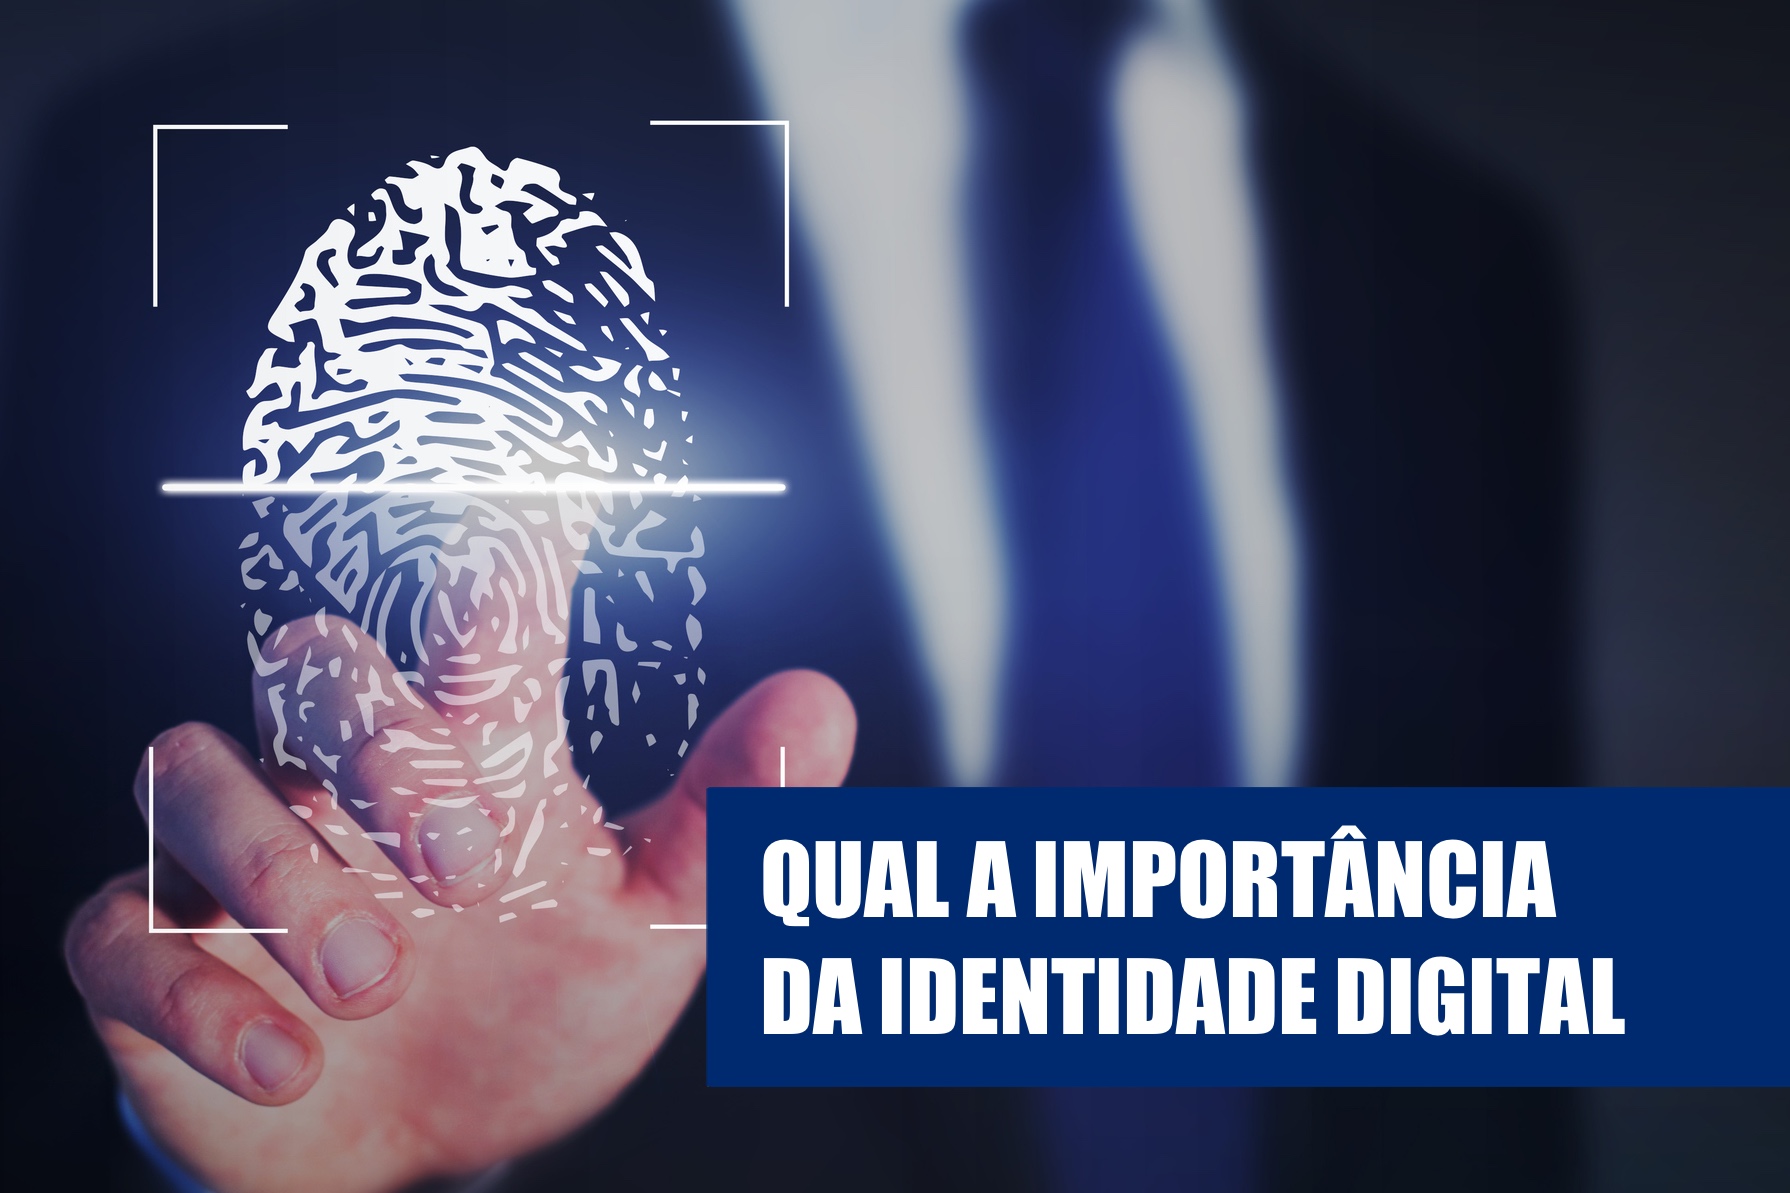 Toomas Hendrik Ilves: qual a importância da identidade digital?